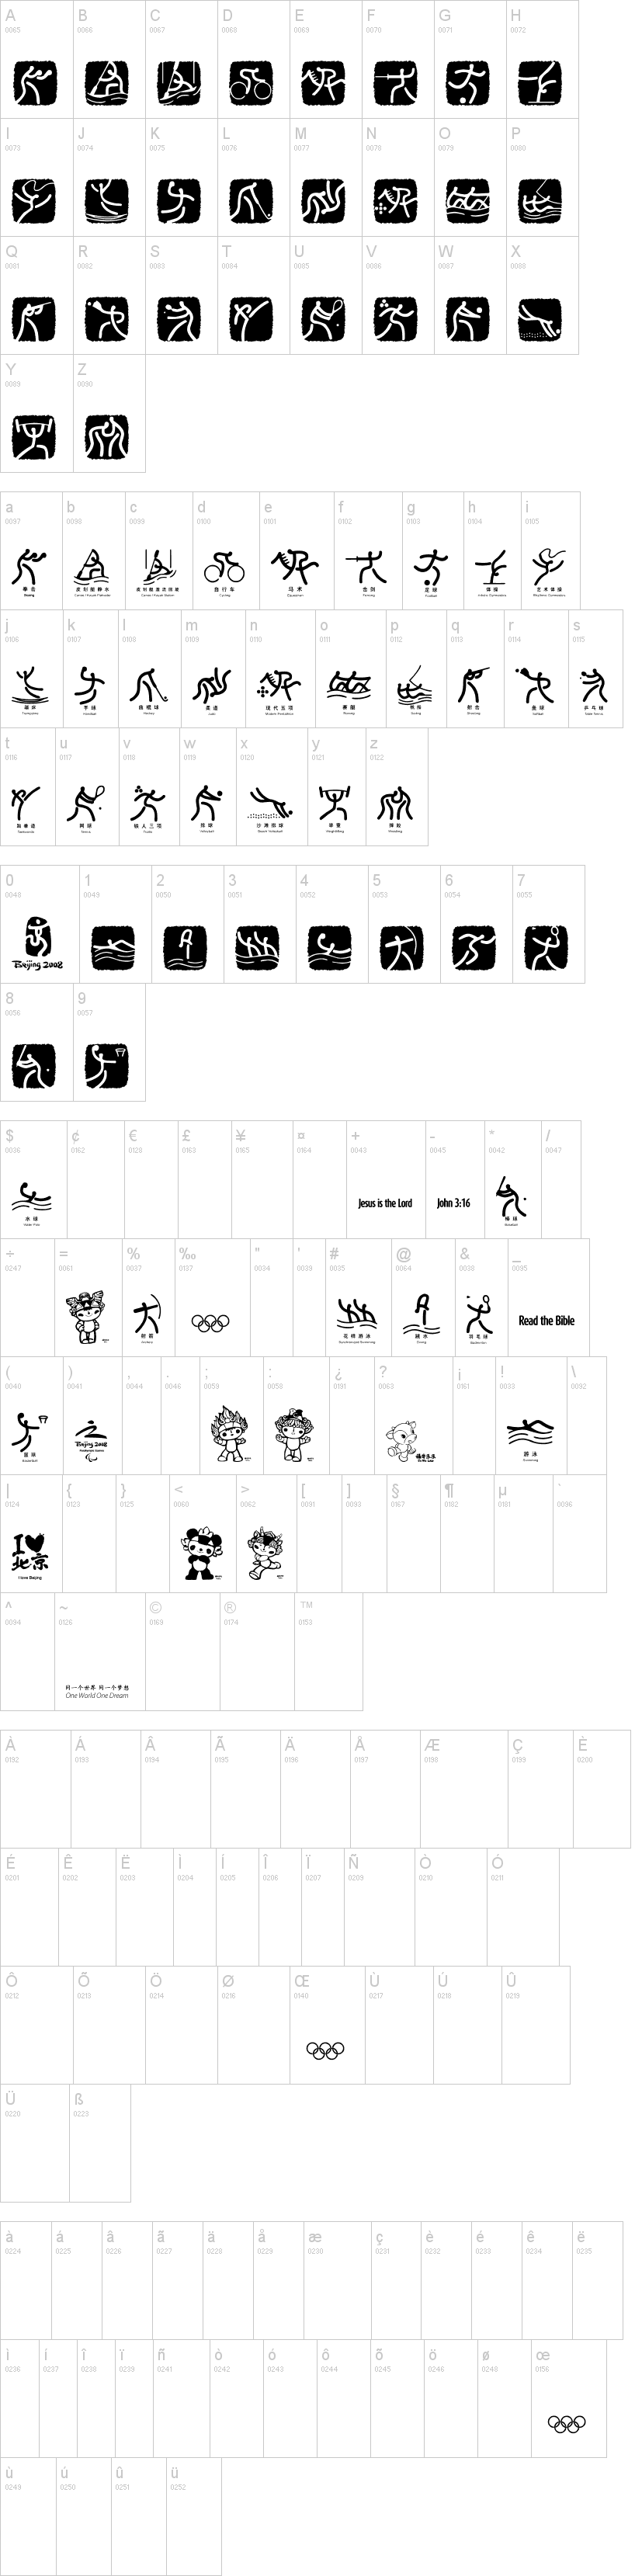 Olympic Beijing Picto字符映射图